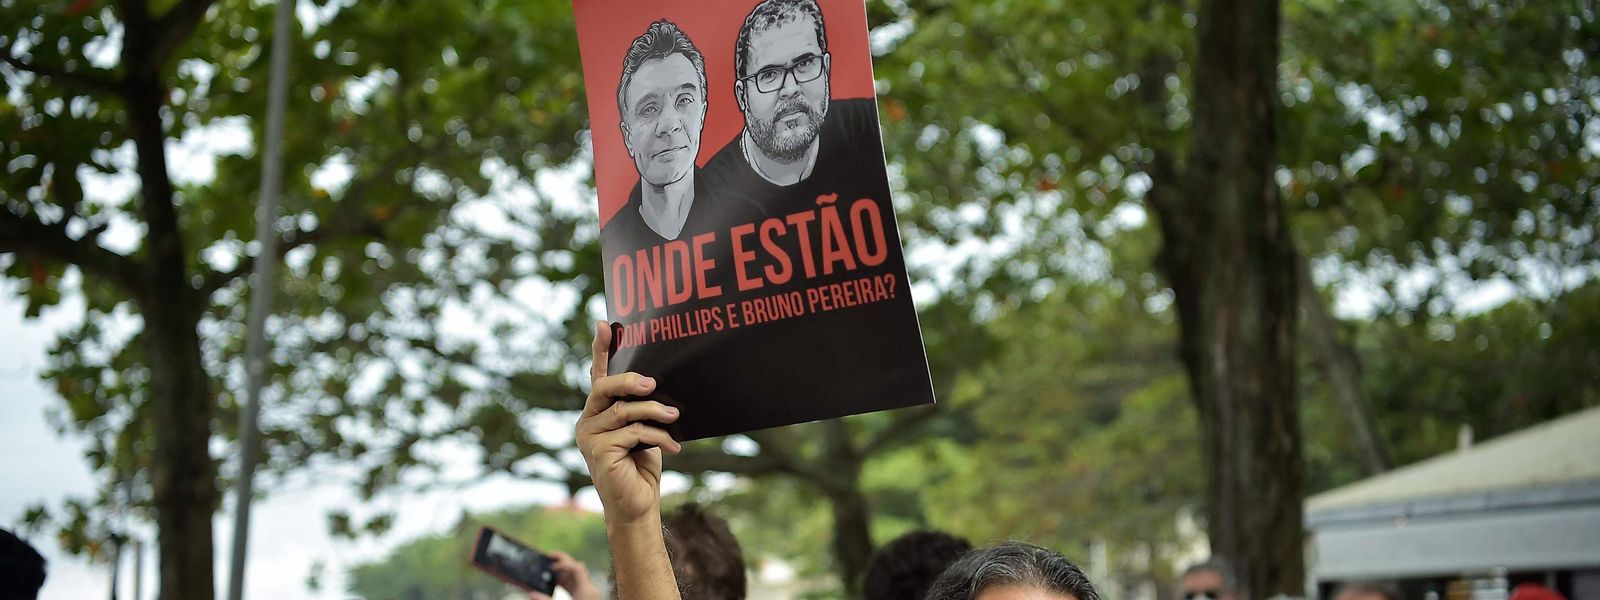 Um manifestante ergue um cartaz com os rostos de Dom Phillips e Bruno Pereira na praia de Copacabana, no Rio de Janeiro, Brasil.